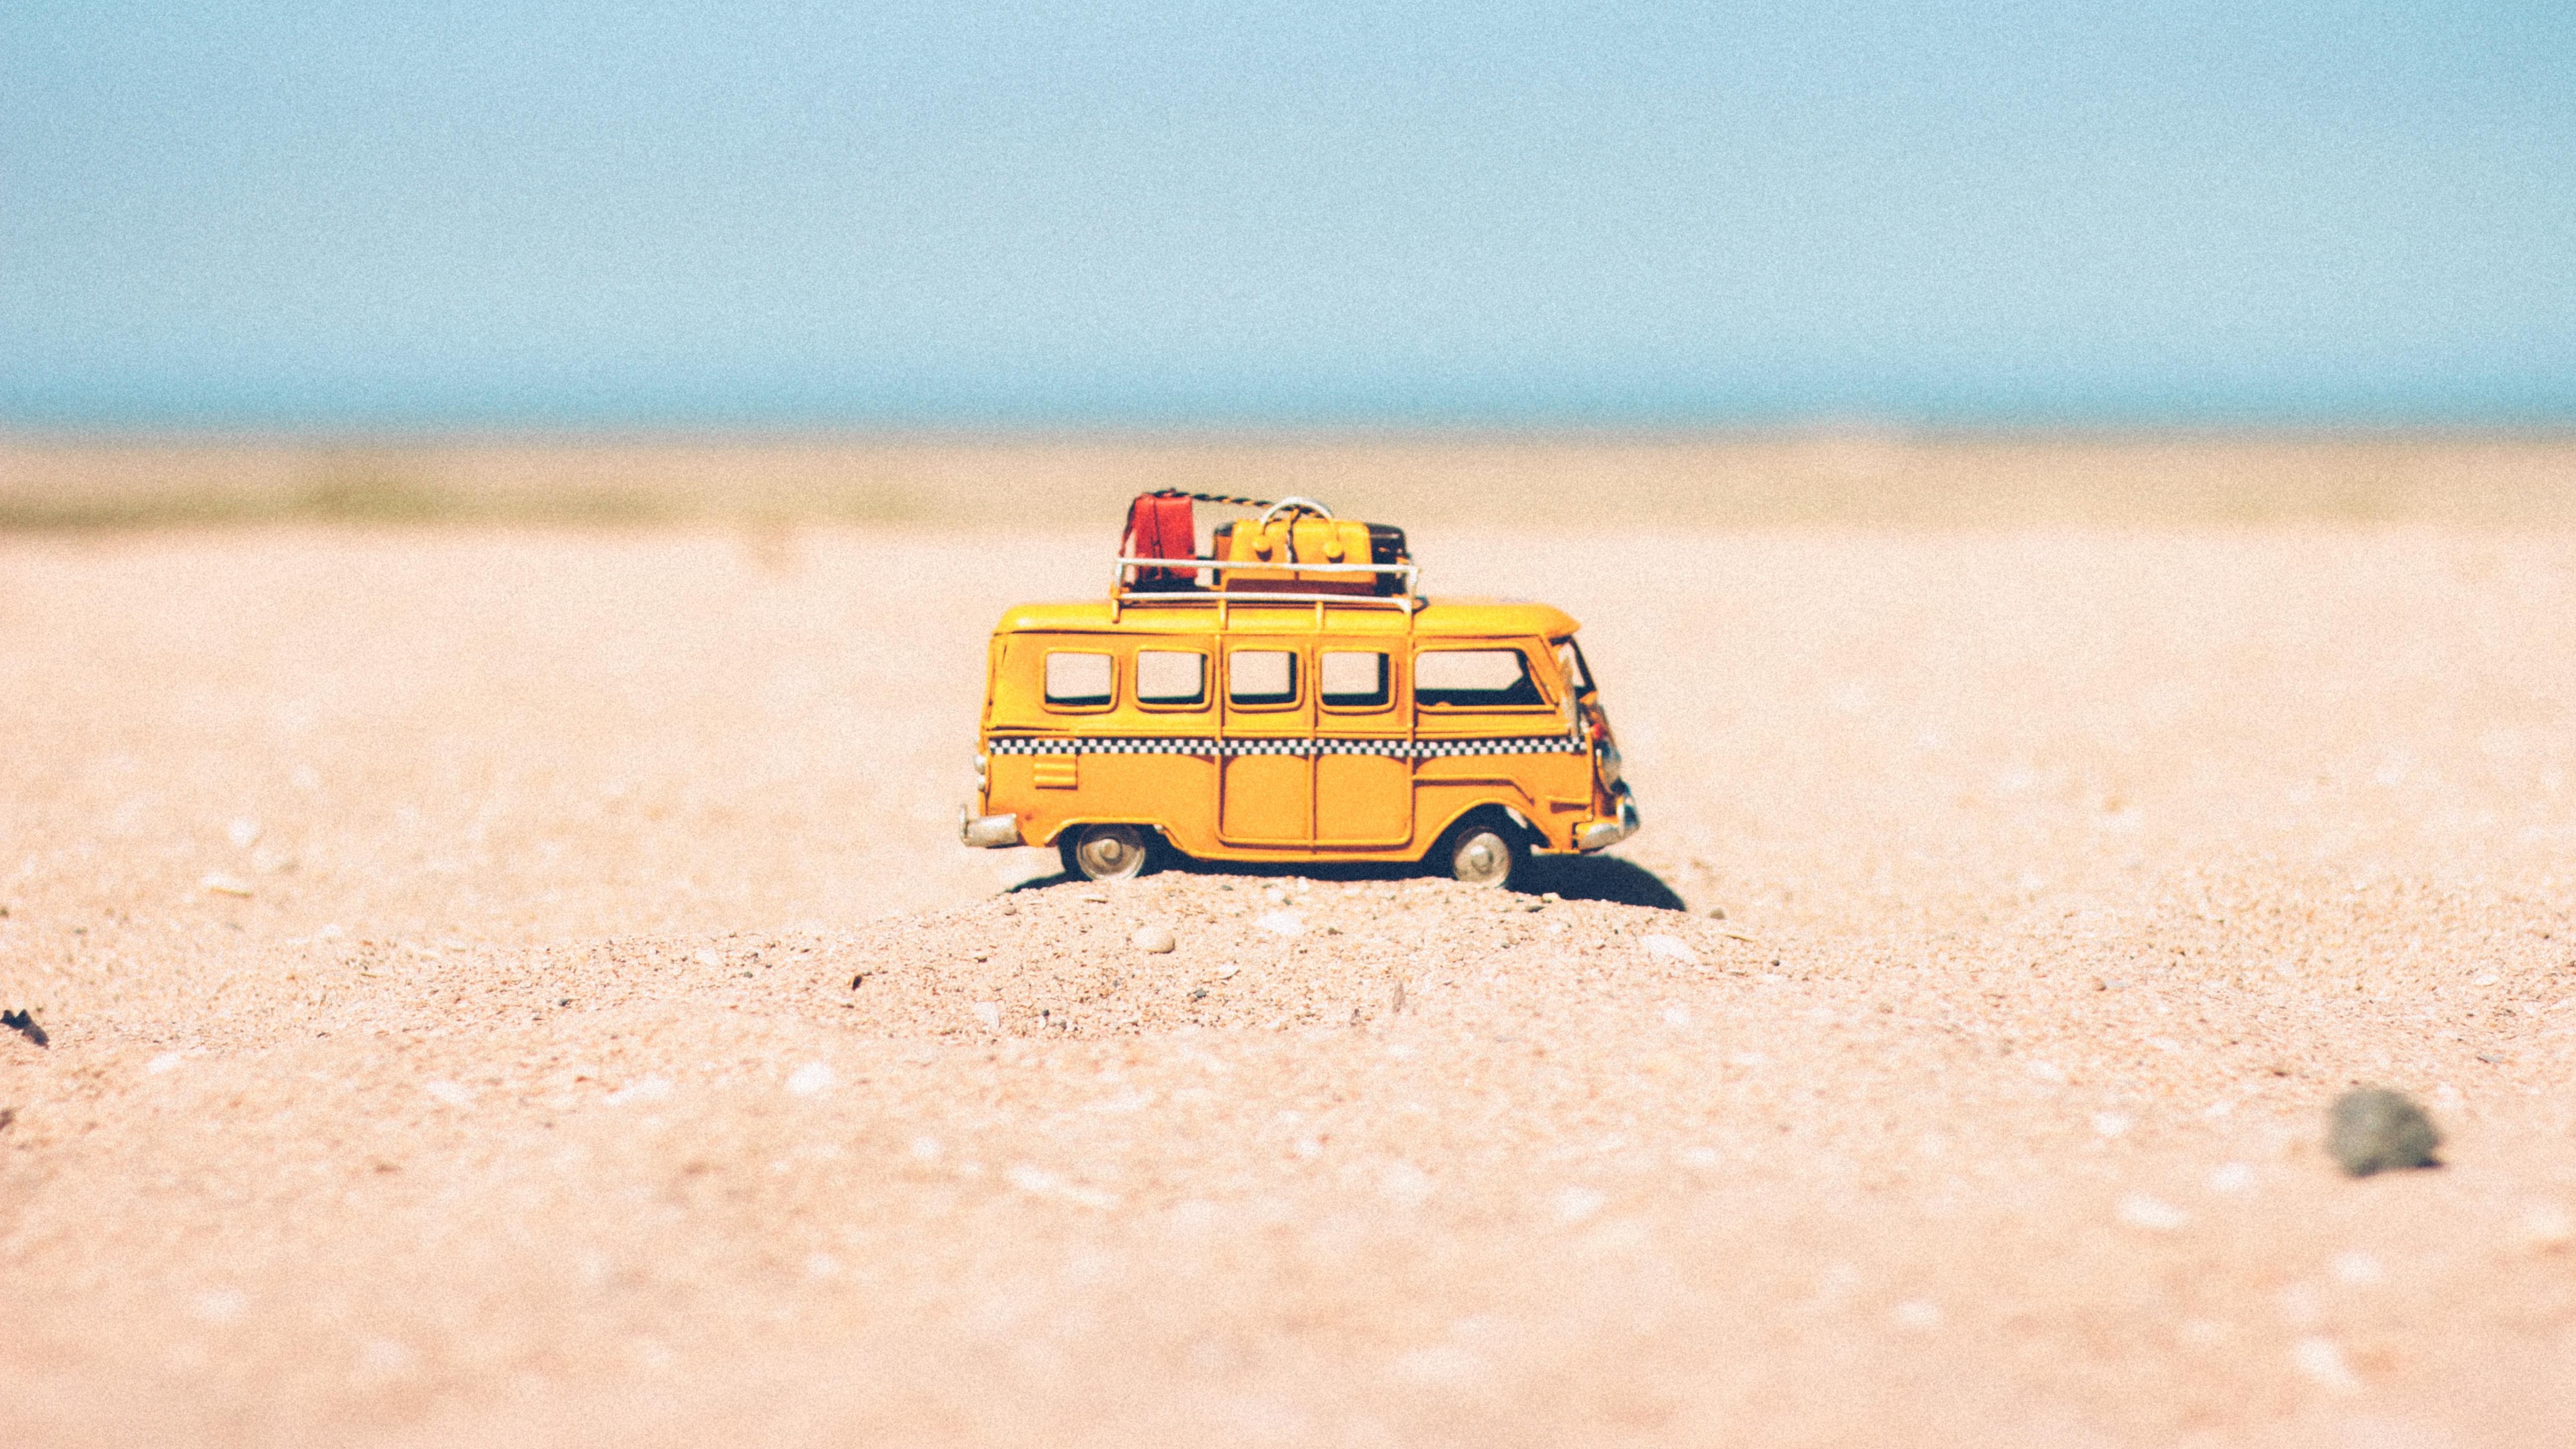 Spielzeug-Van auf Sand